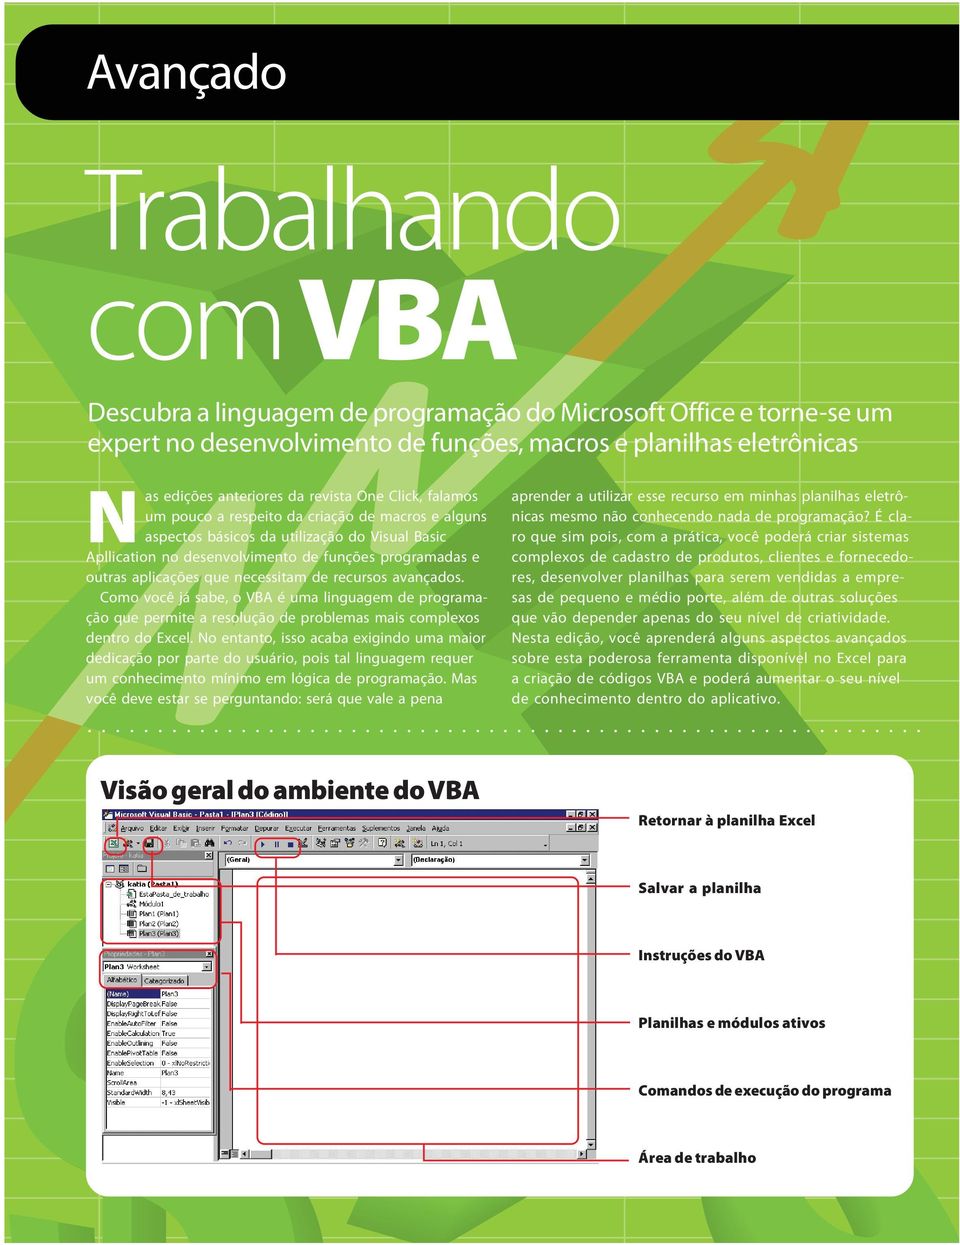 que necessitam de recursos avançados. Como você já sabe, o VBA é uma linguagem de programação que permite a resolução de problemas mais complexos dentro do Excel.